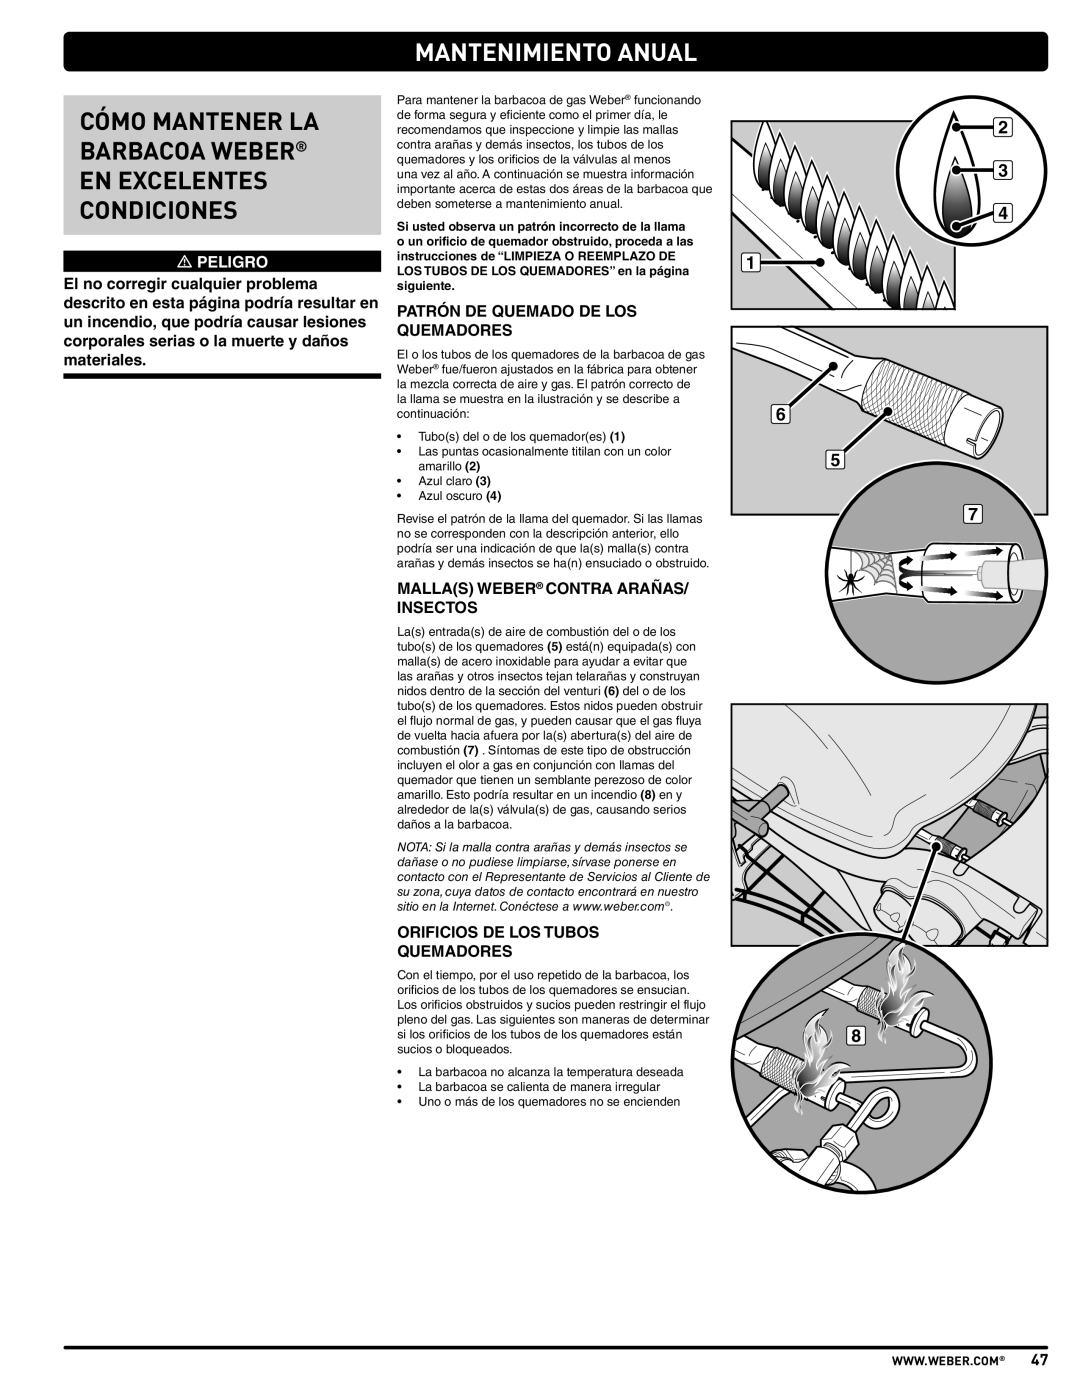 Weber 57515 manual Mantenimiento Anual, Cómo Mantener La Barbacoa Weber En Excelentes Condiciones, m PELIGRO 